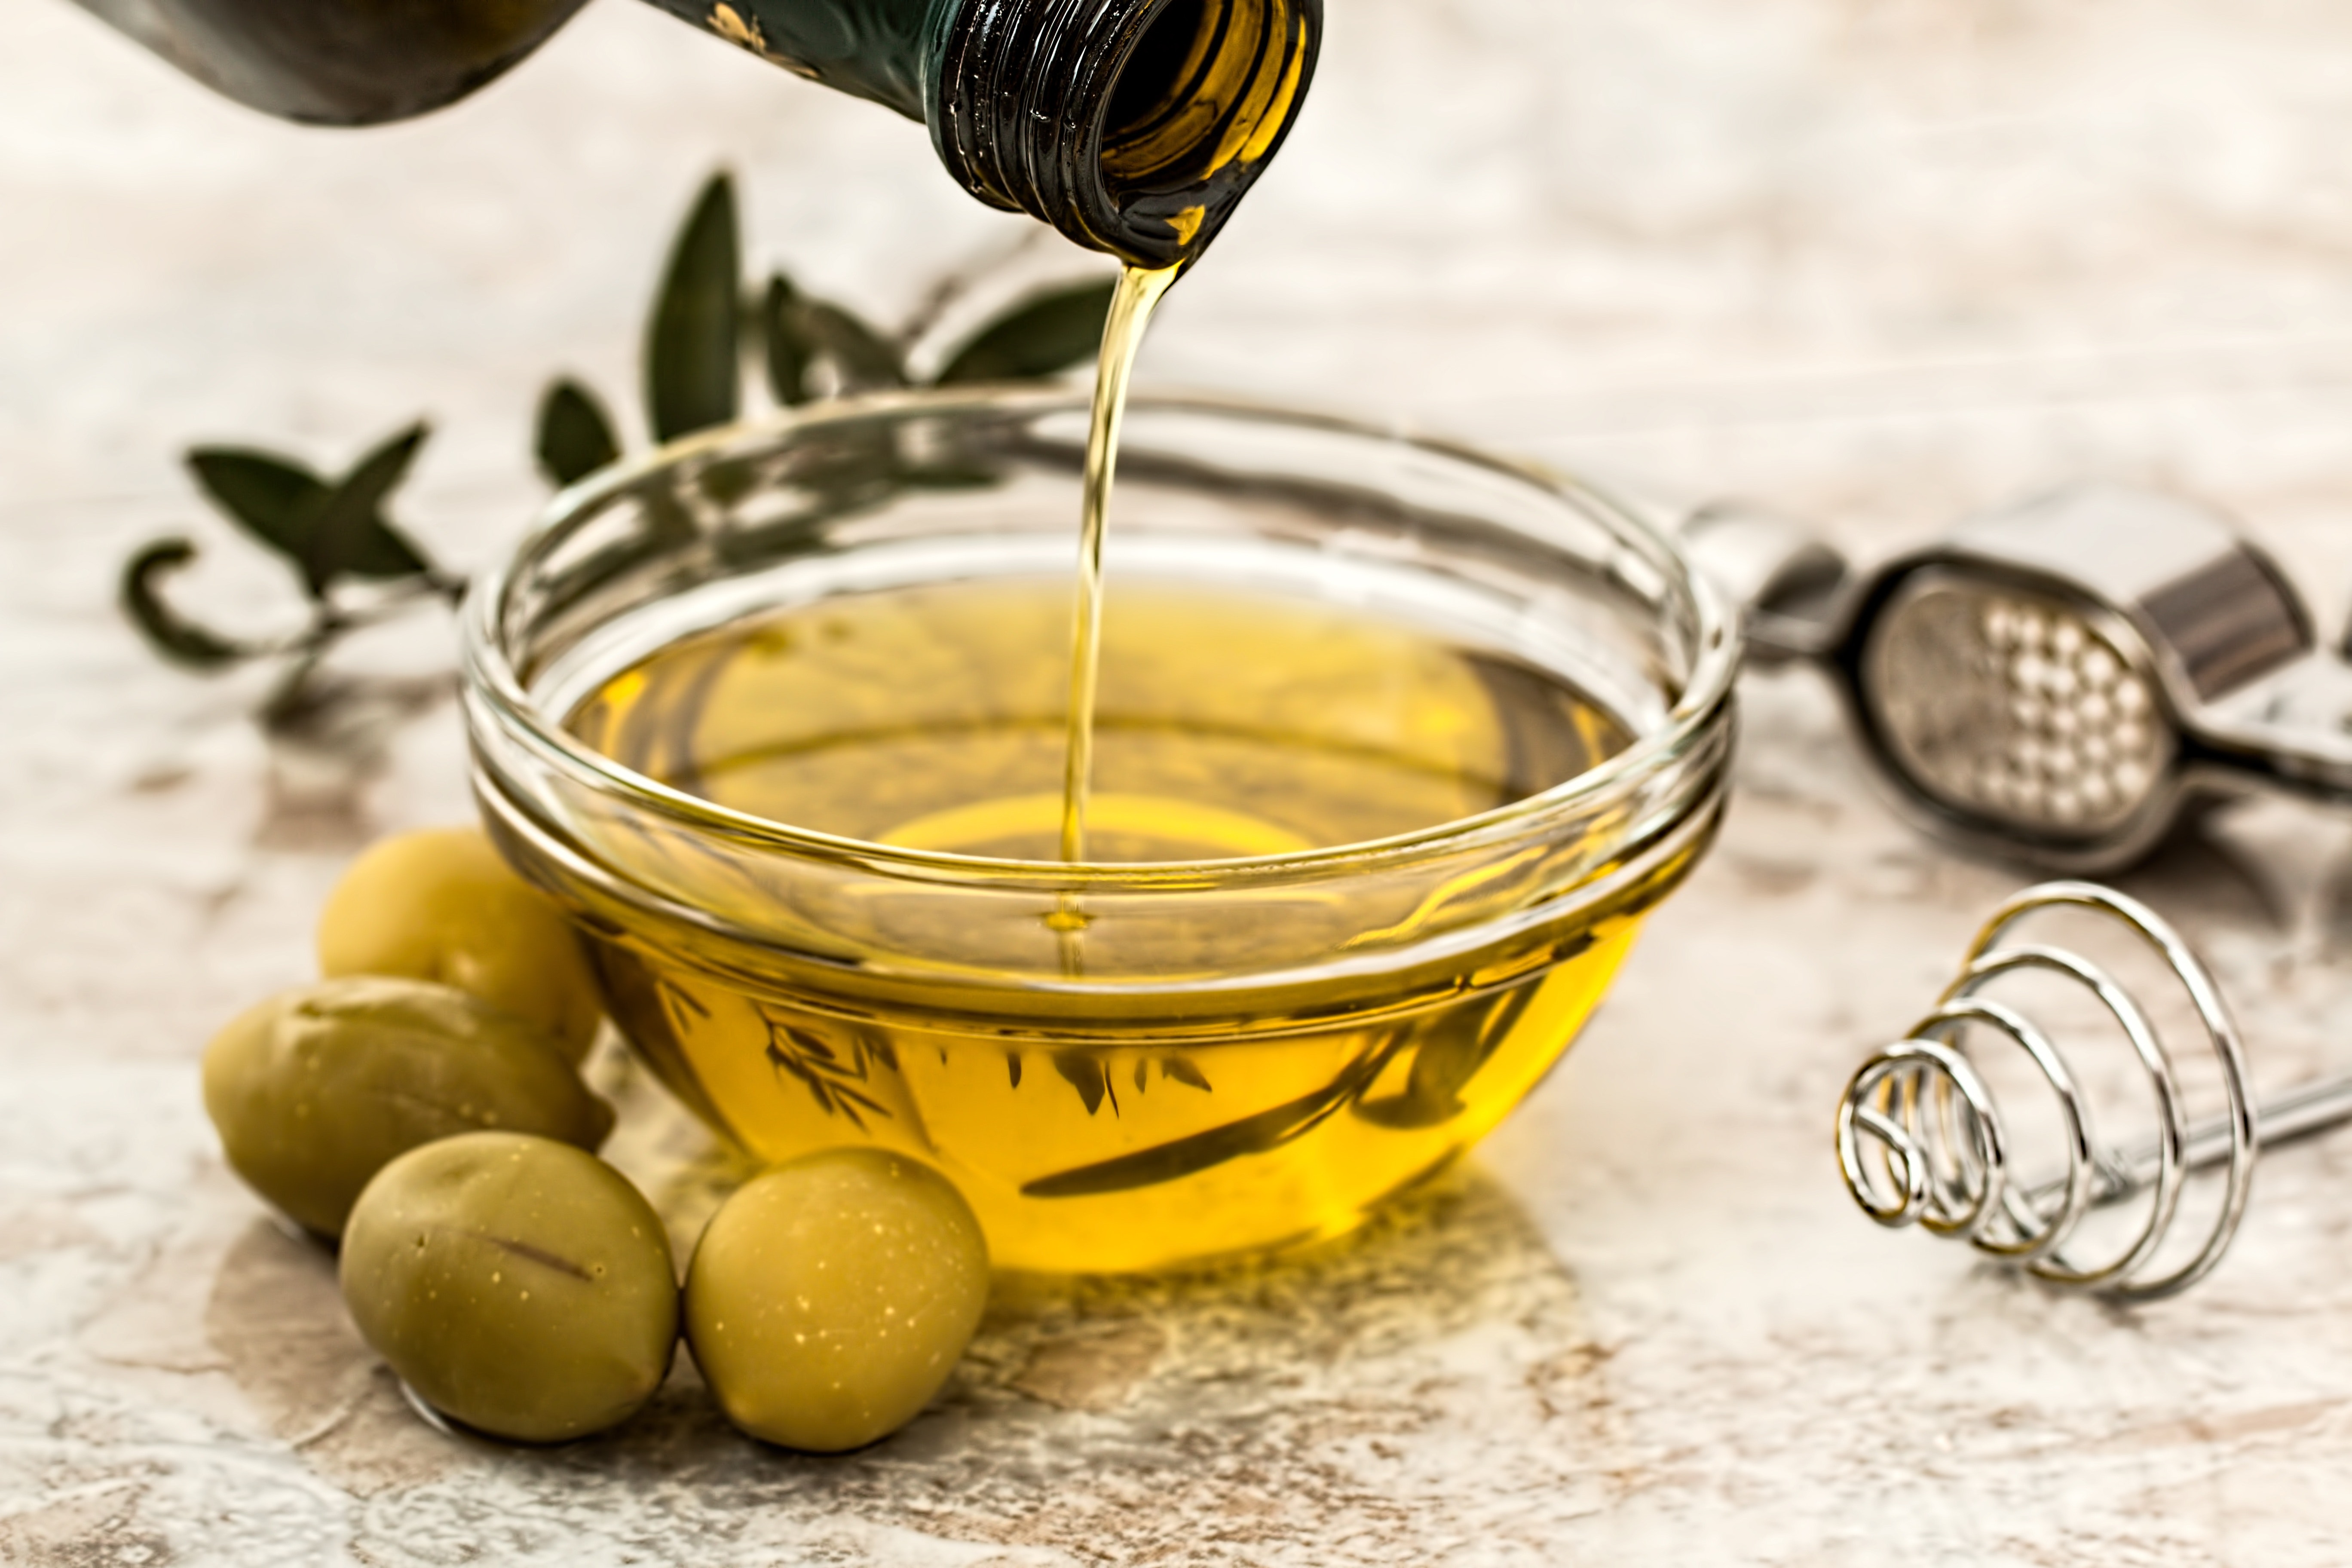 Olivenöl extra vergine Olivenöl 0,5L in einer ansprechenden Blechdose original aus Spanien gesundes natürliches wohlschmeckendes Öl